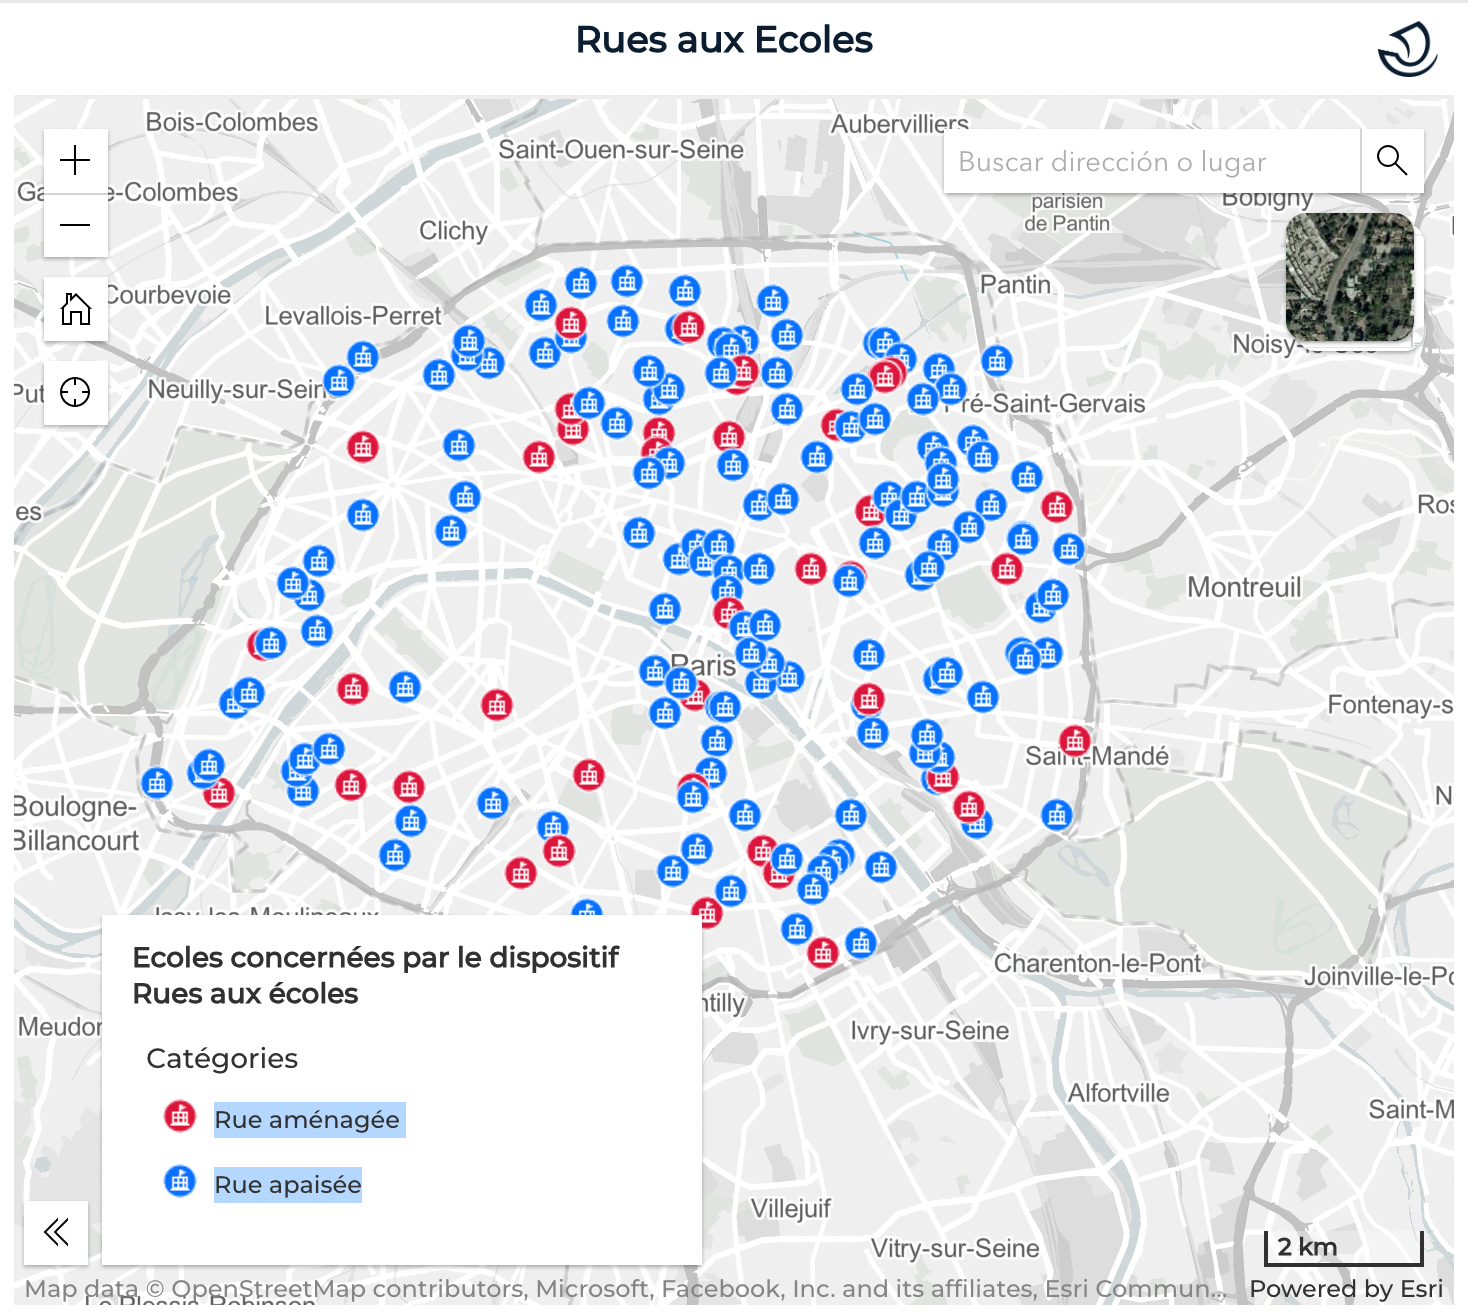 Mapa de las calles escolares en Paris. Fuene: Ayuntamiento de Paris.Enlace: https://capgeo.sig.paris.fr/Apps/RuesAuxEcoles/ 